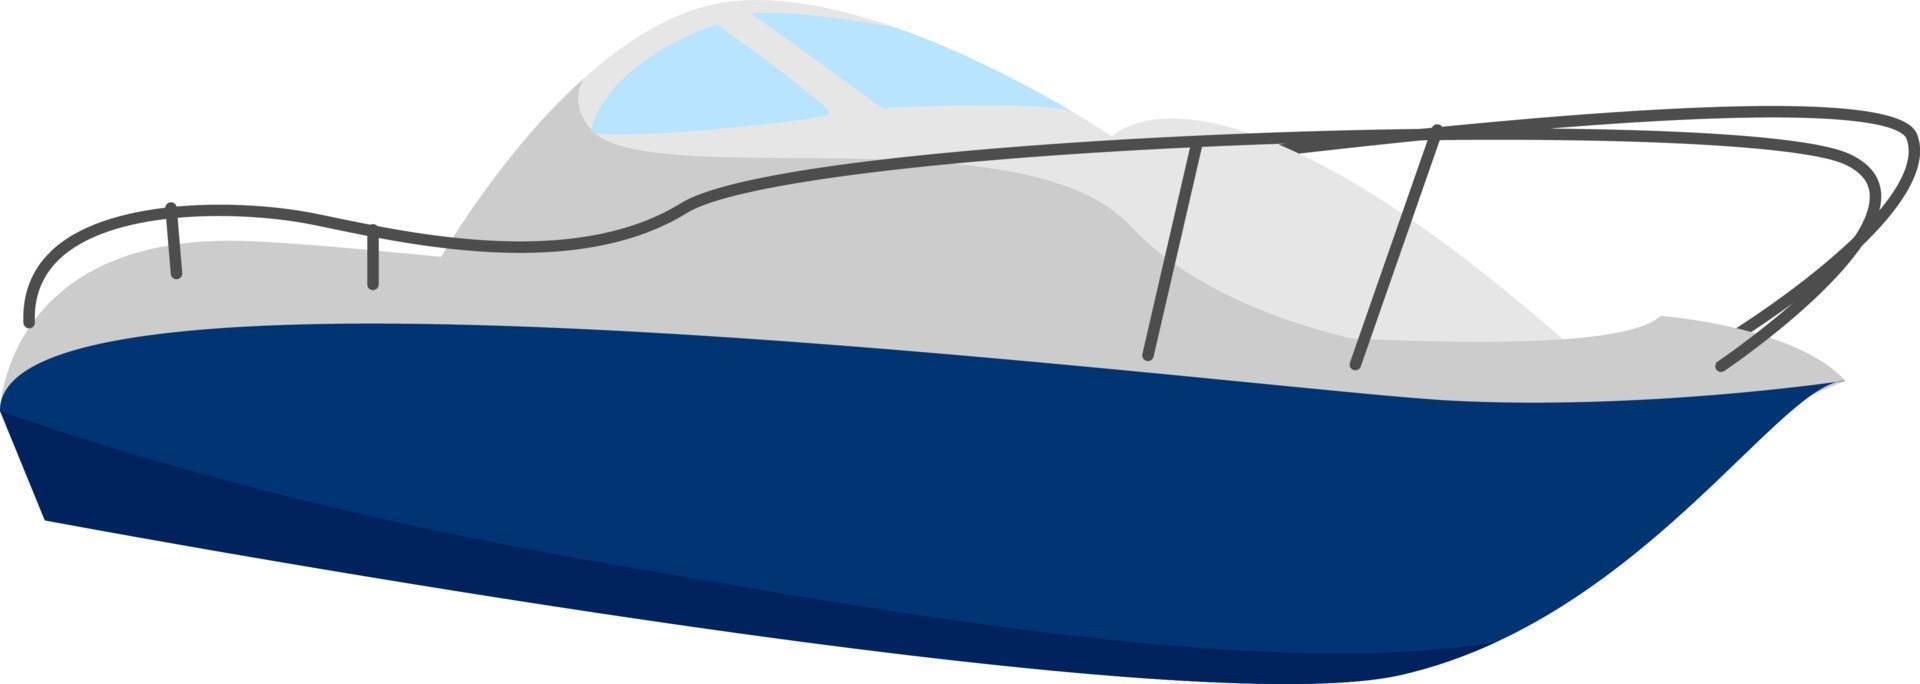 snabb båt, illustration, vektor på vit bakgrund.